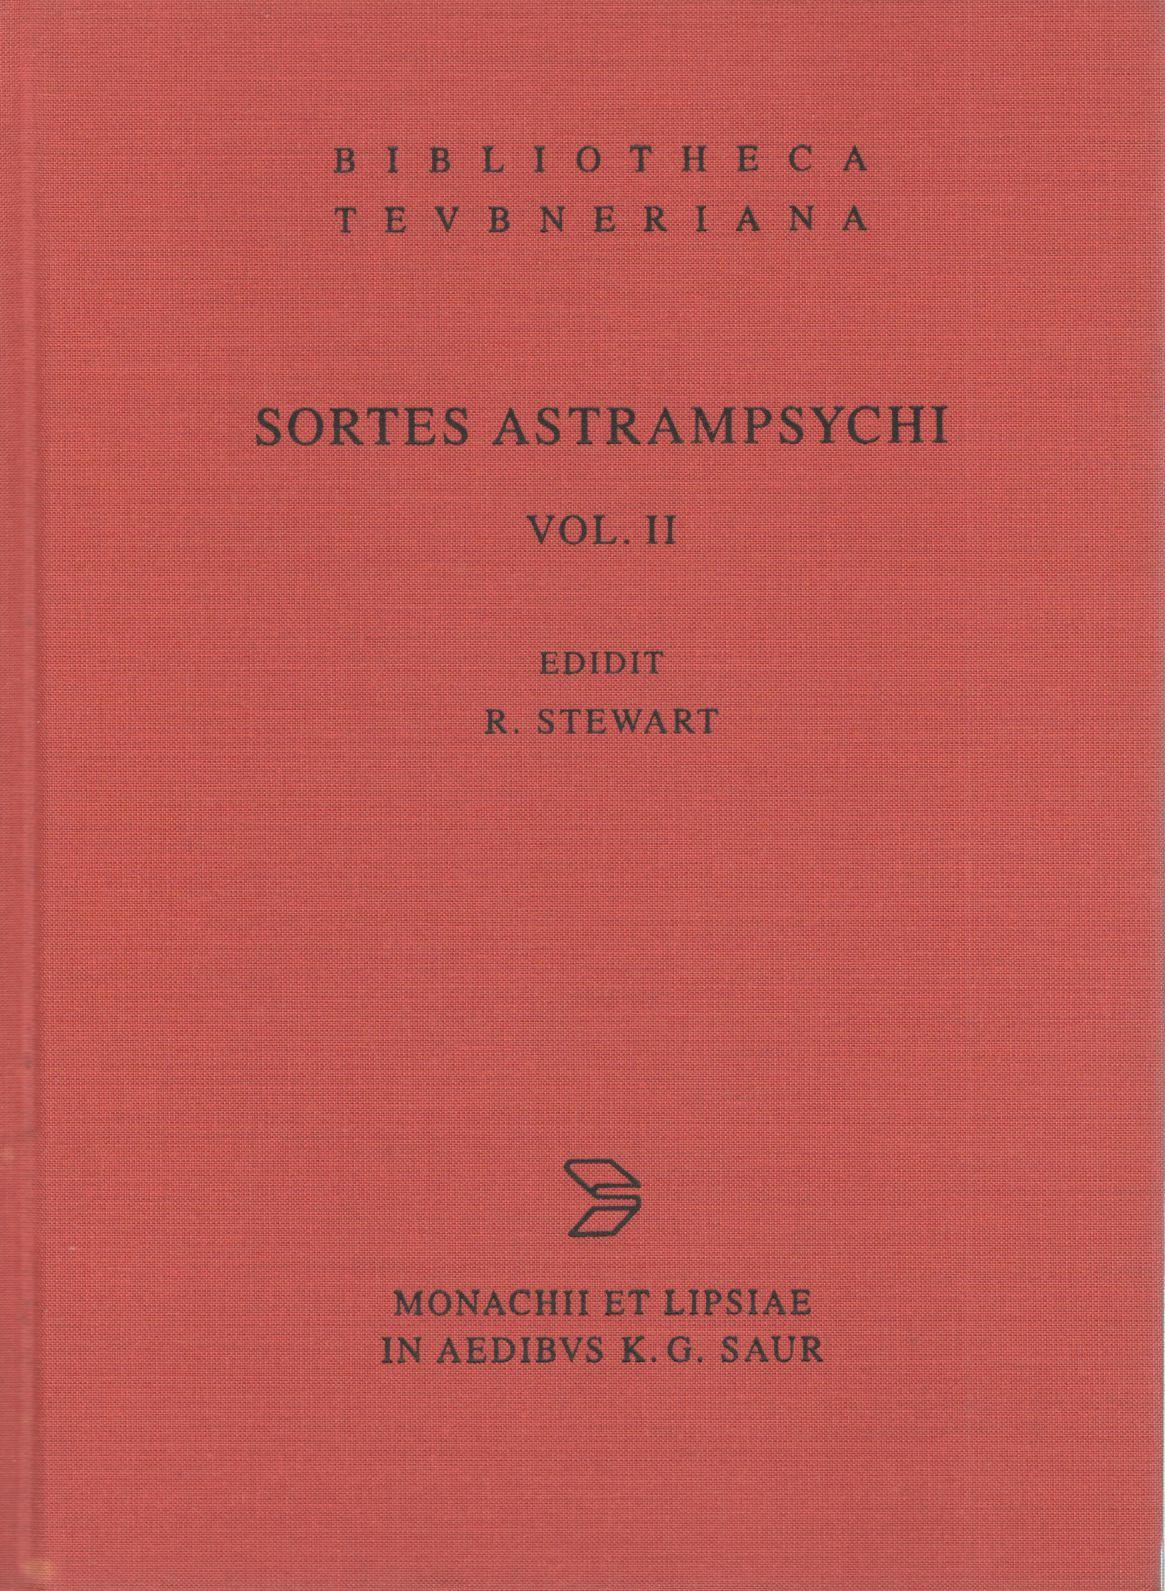 SORTES ASTRAMPSYCHI VOL. II